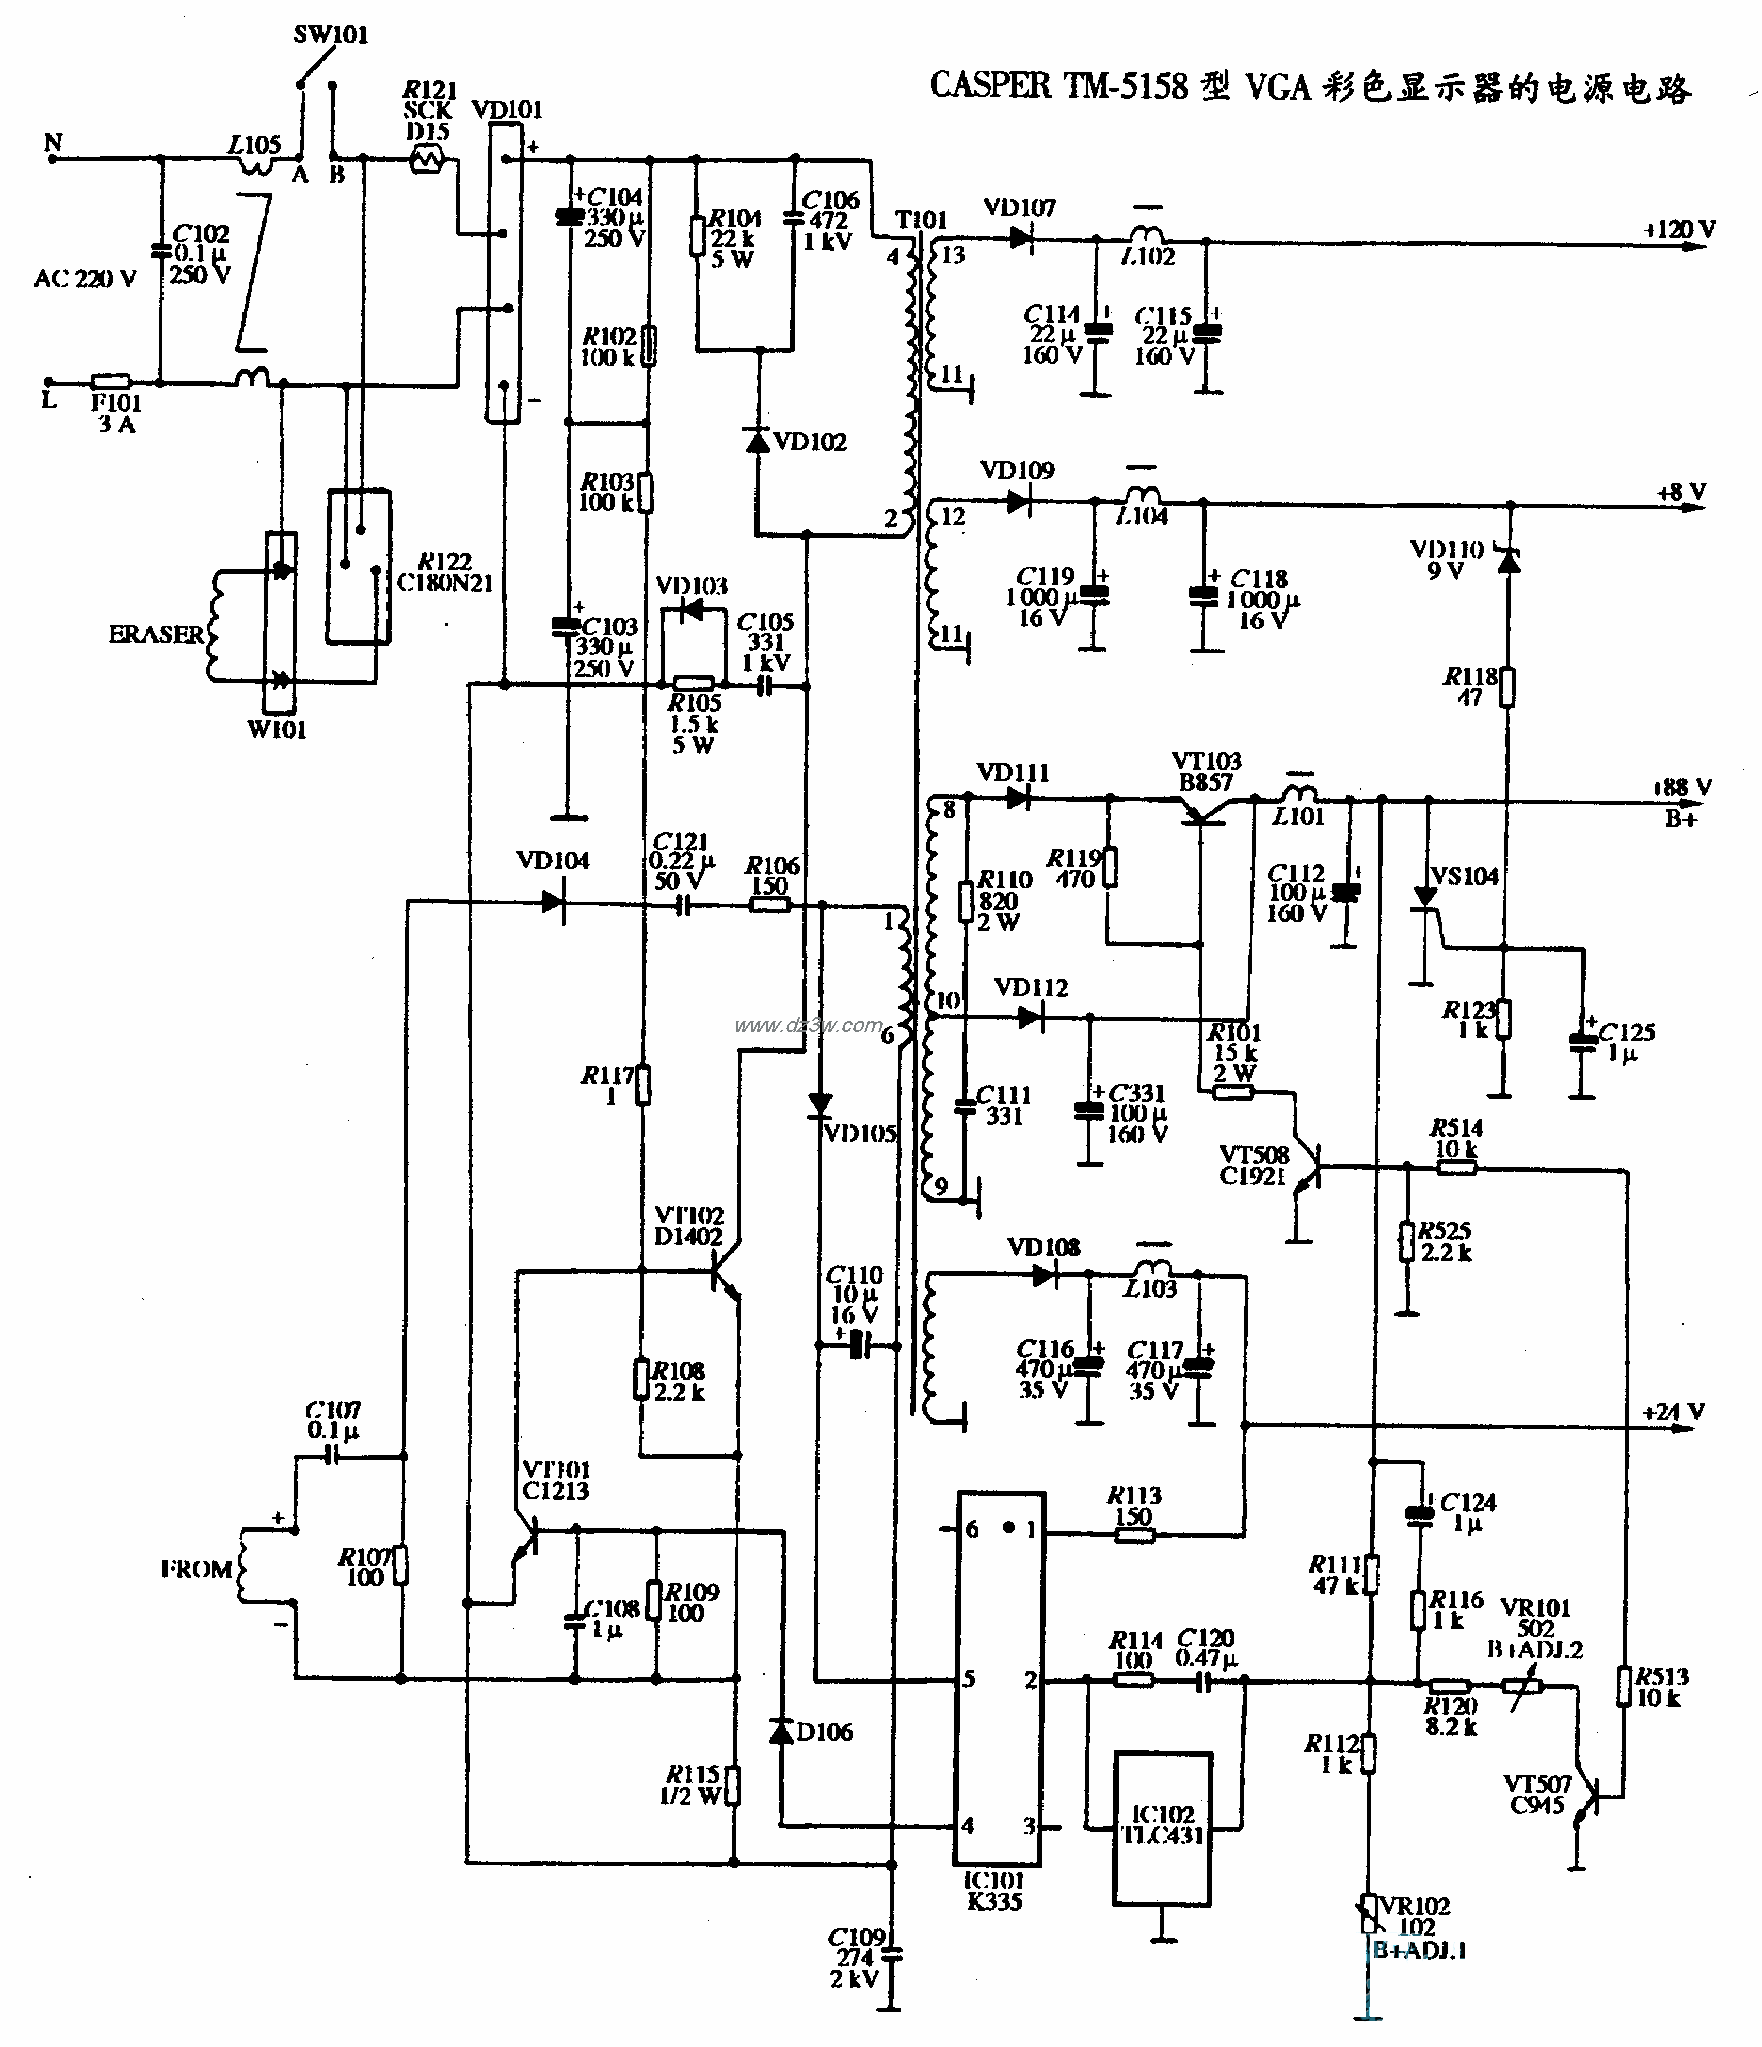 CASPER TM-5158型VGA彩色顯示器的電源電路圖